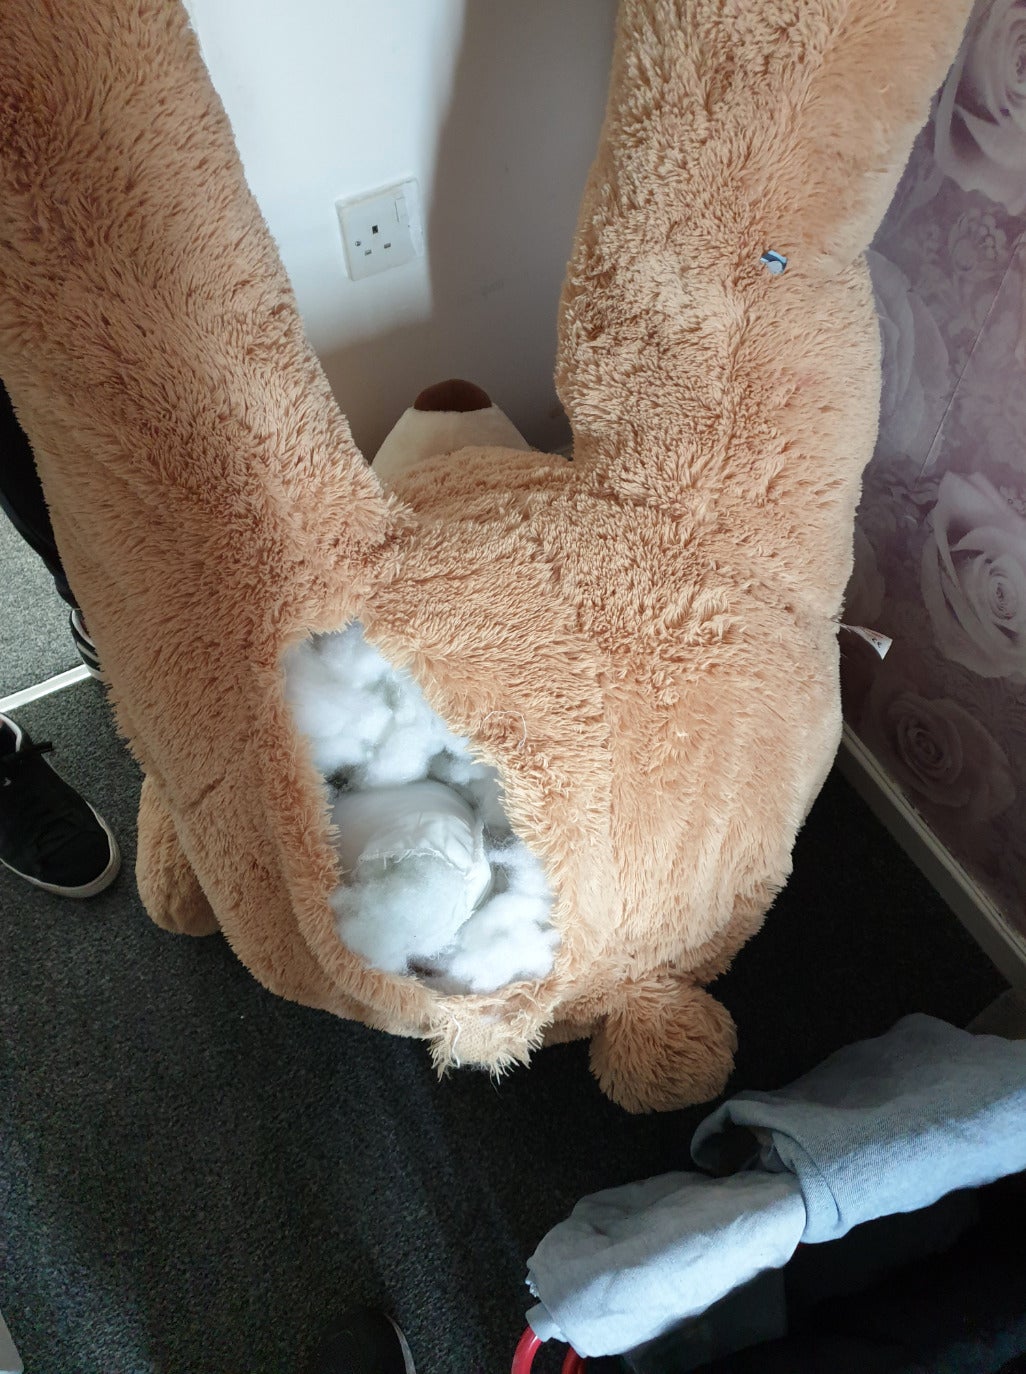 โจรซ่อนตัวในตุ๊กตาหมียักษ์